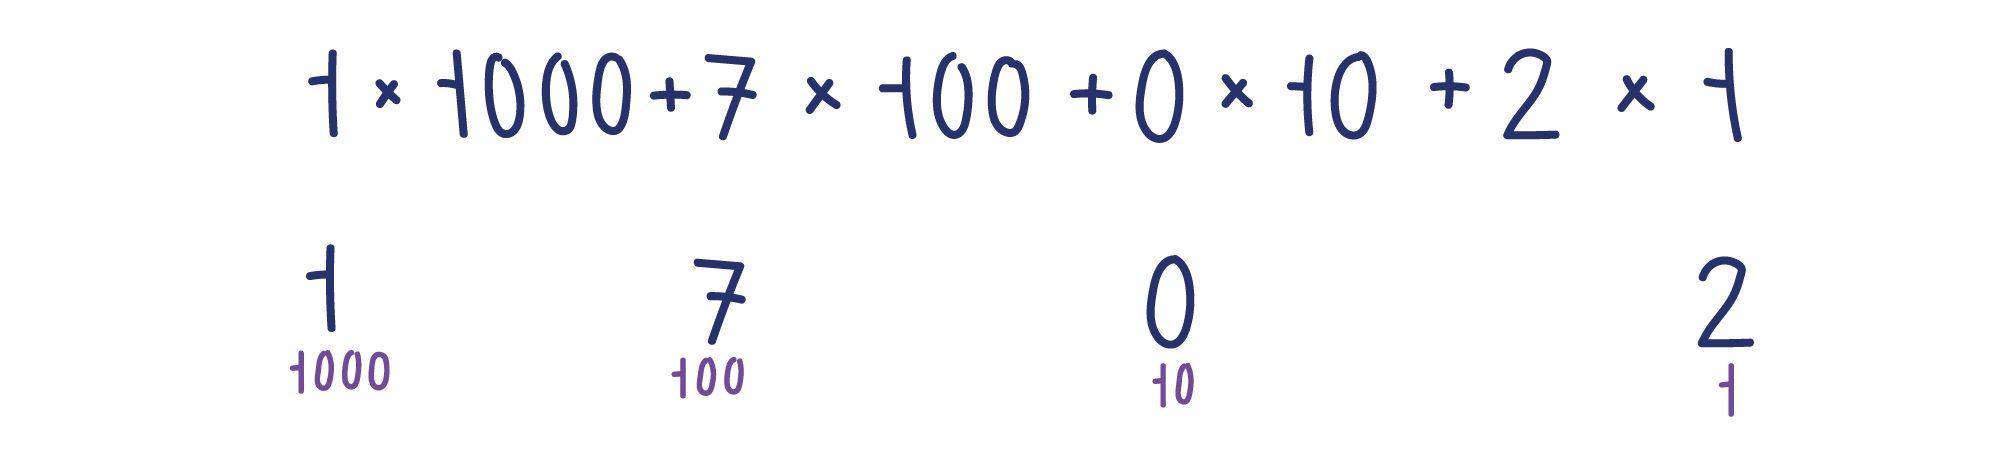 1×1000+7×100+0×10+2×1